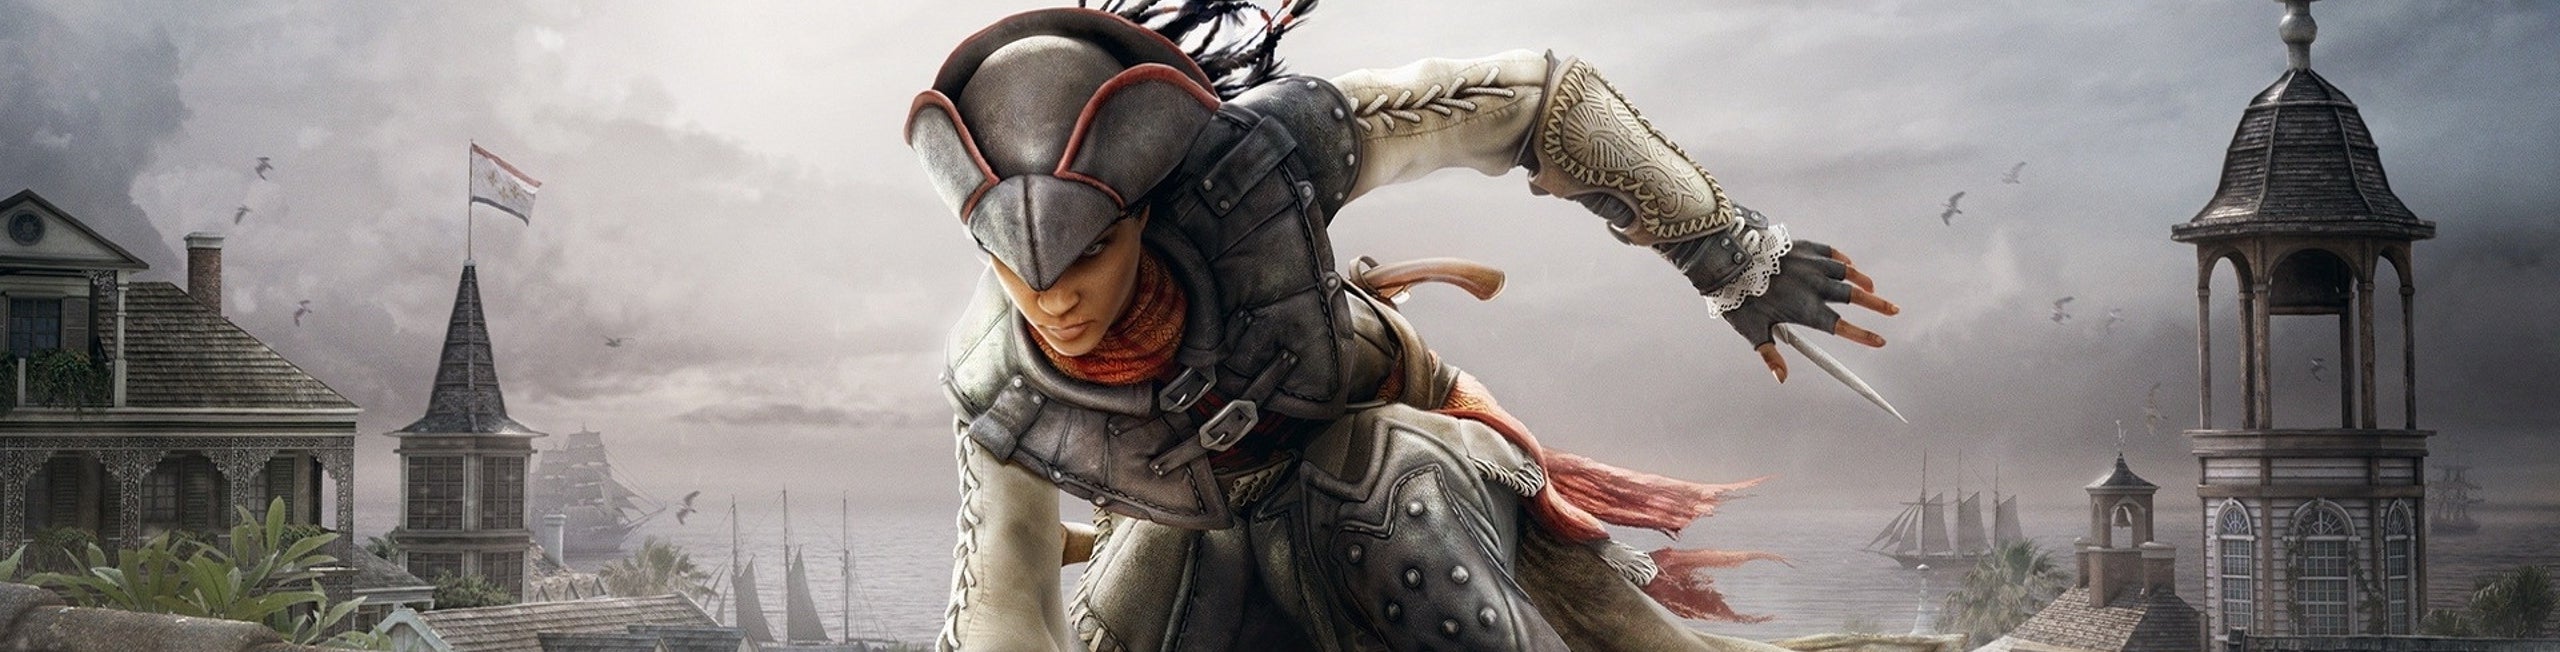 Immagine di Assassin's Creed Liberation - la guida